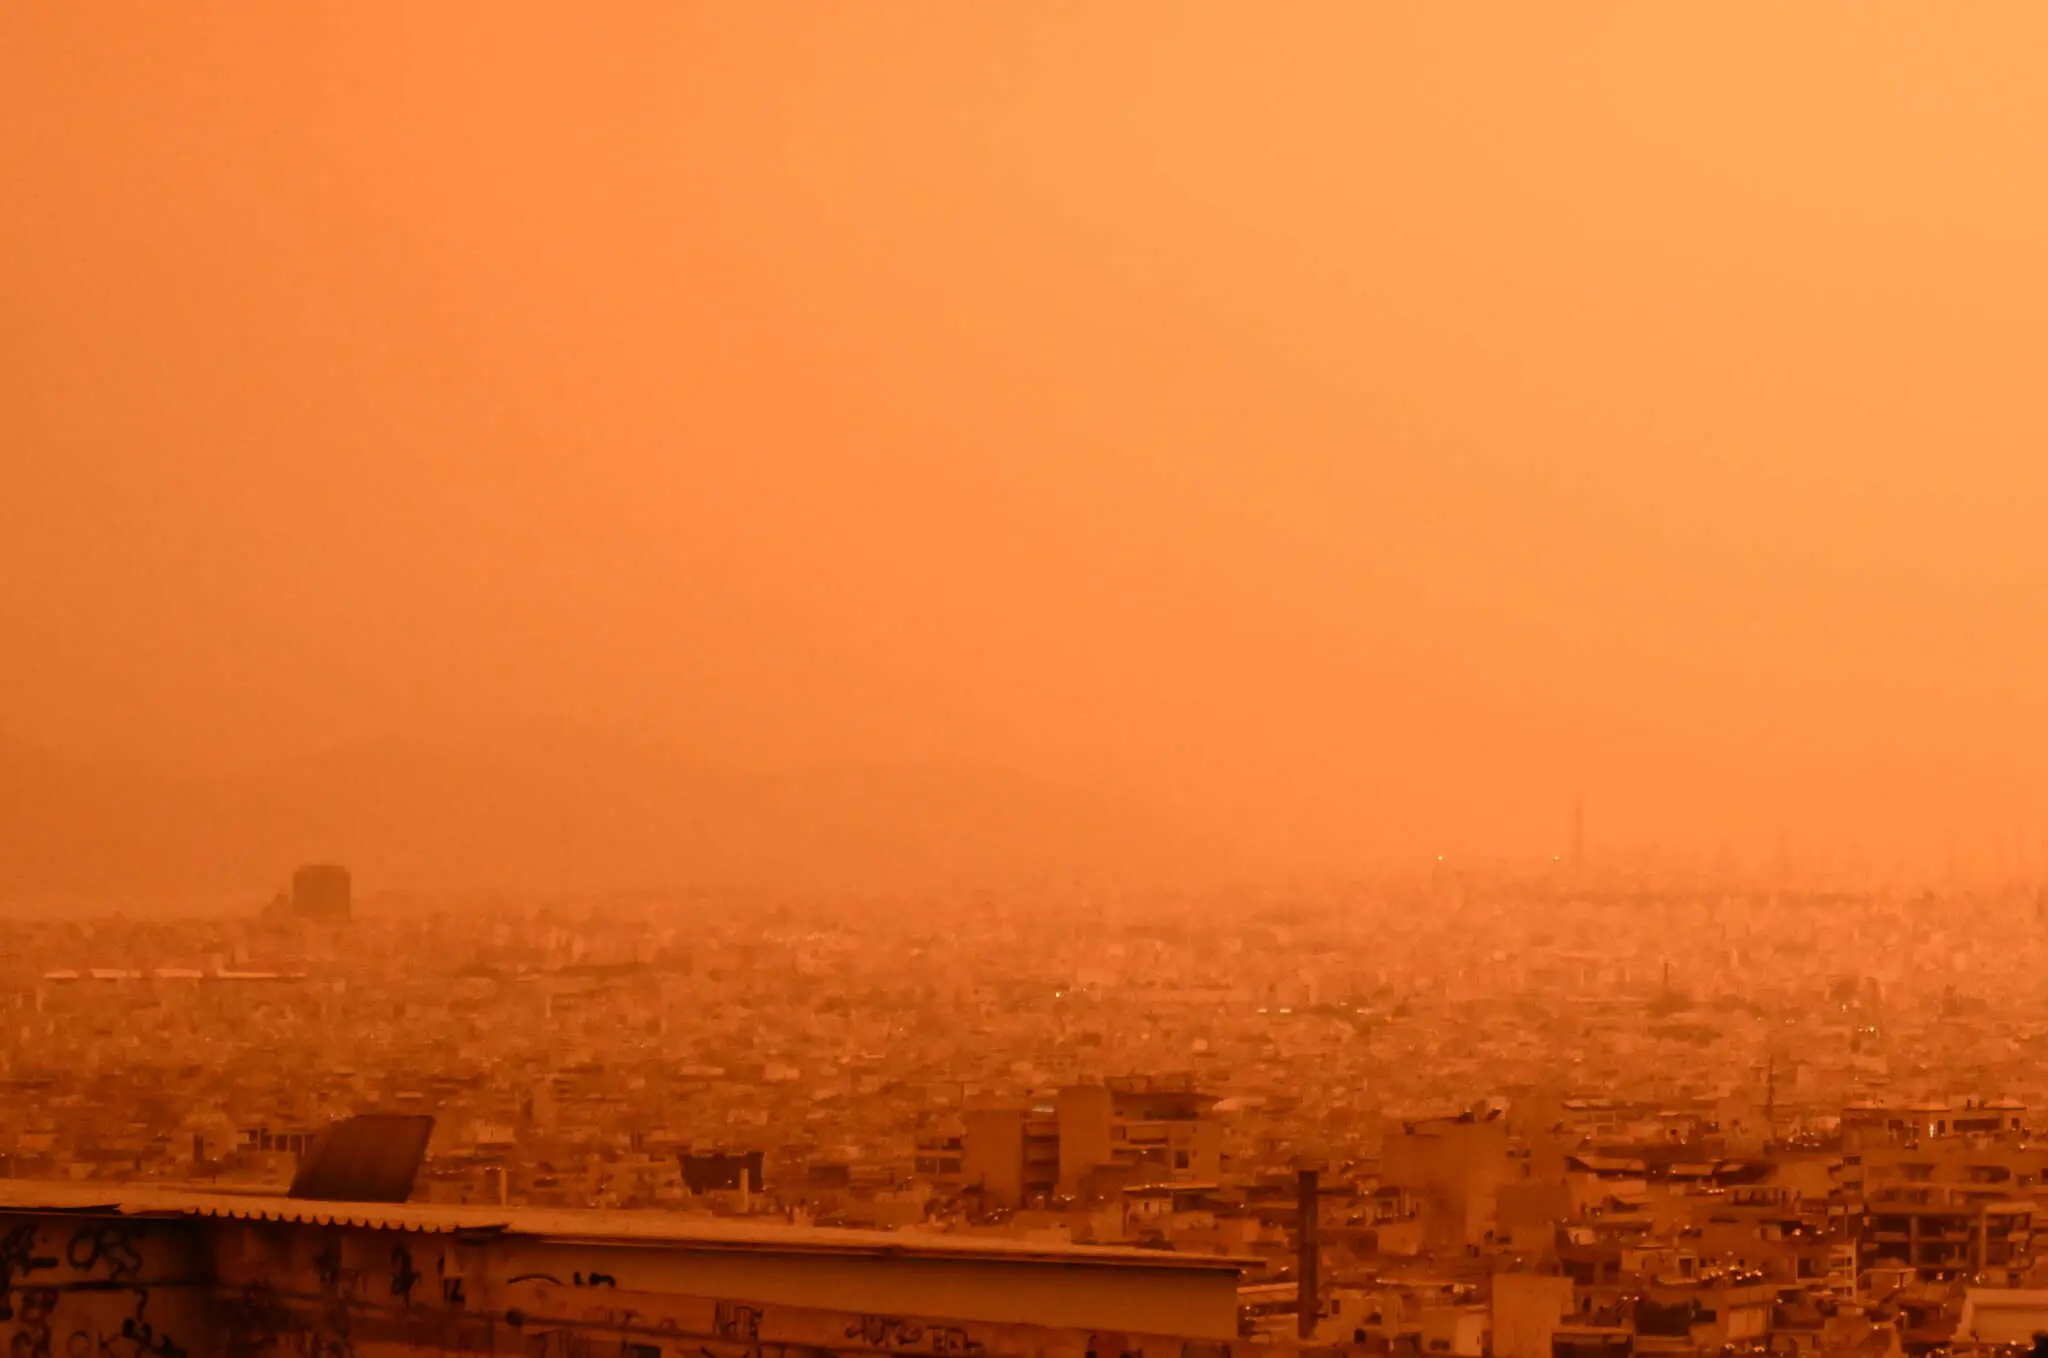 Καιρός: Η αφρικανική σκόνη «έβαψε» πορτοκαλί όλη τη χώρα, περιορισμένη η ορατότητα